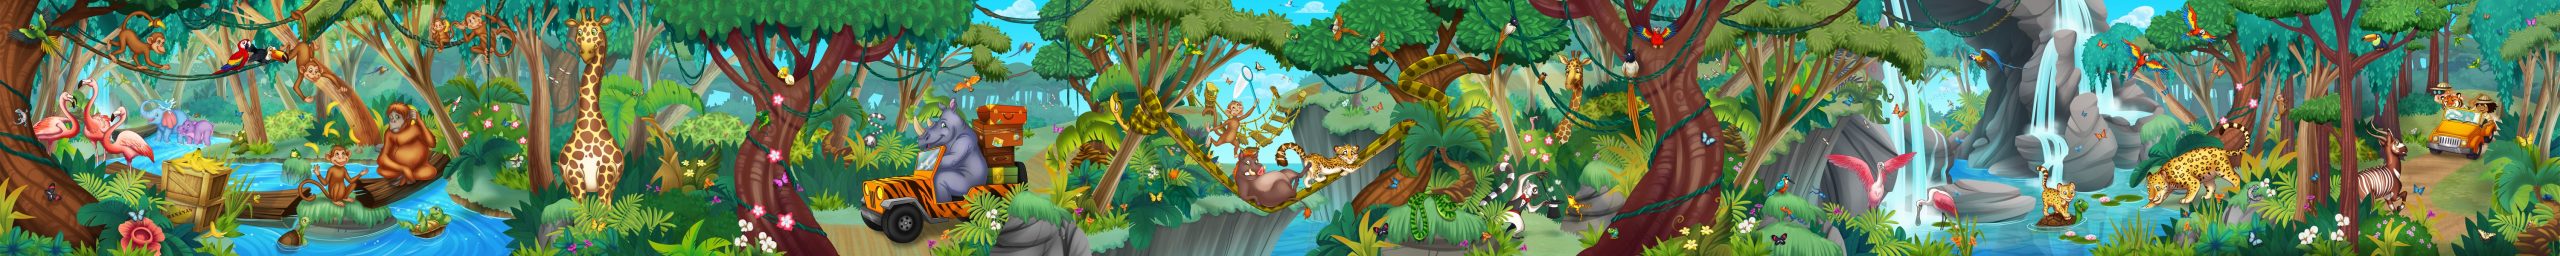 KidsMural-Jungle2